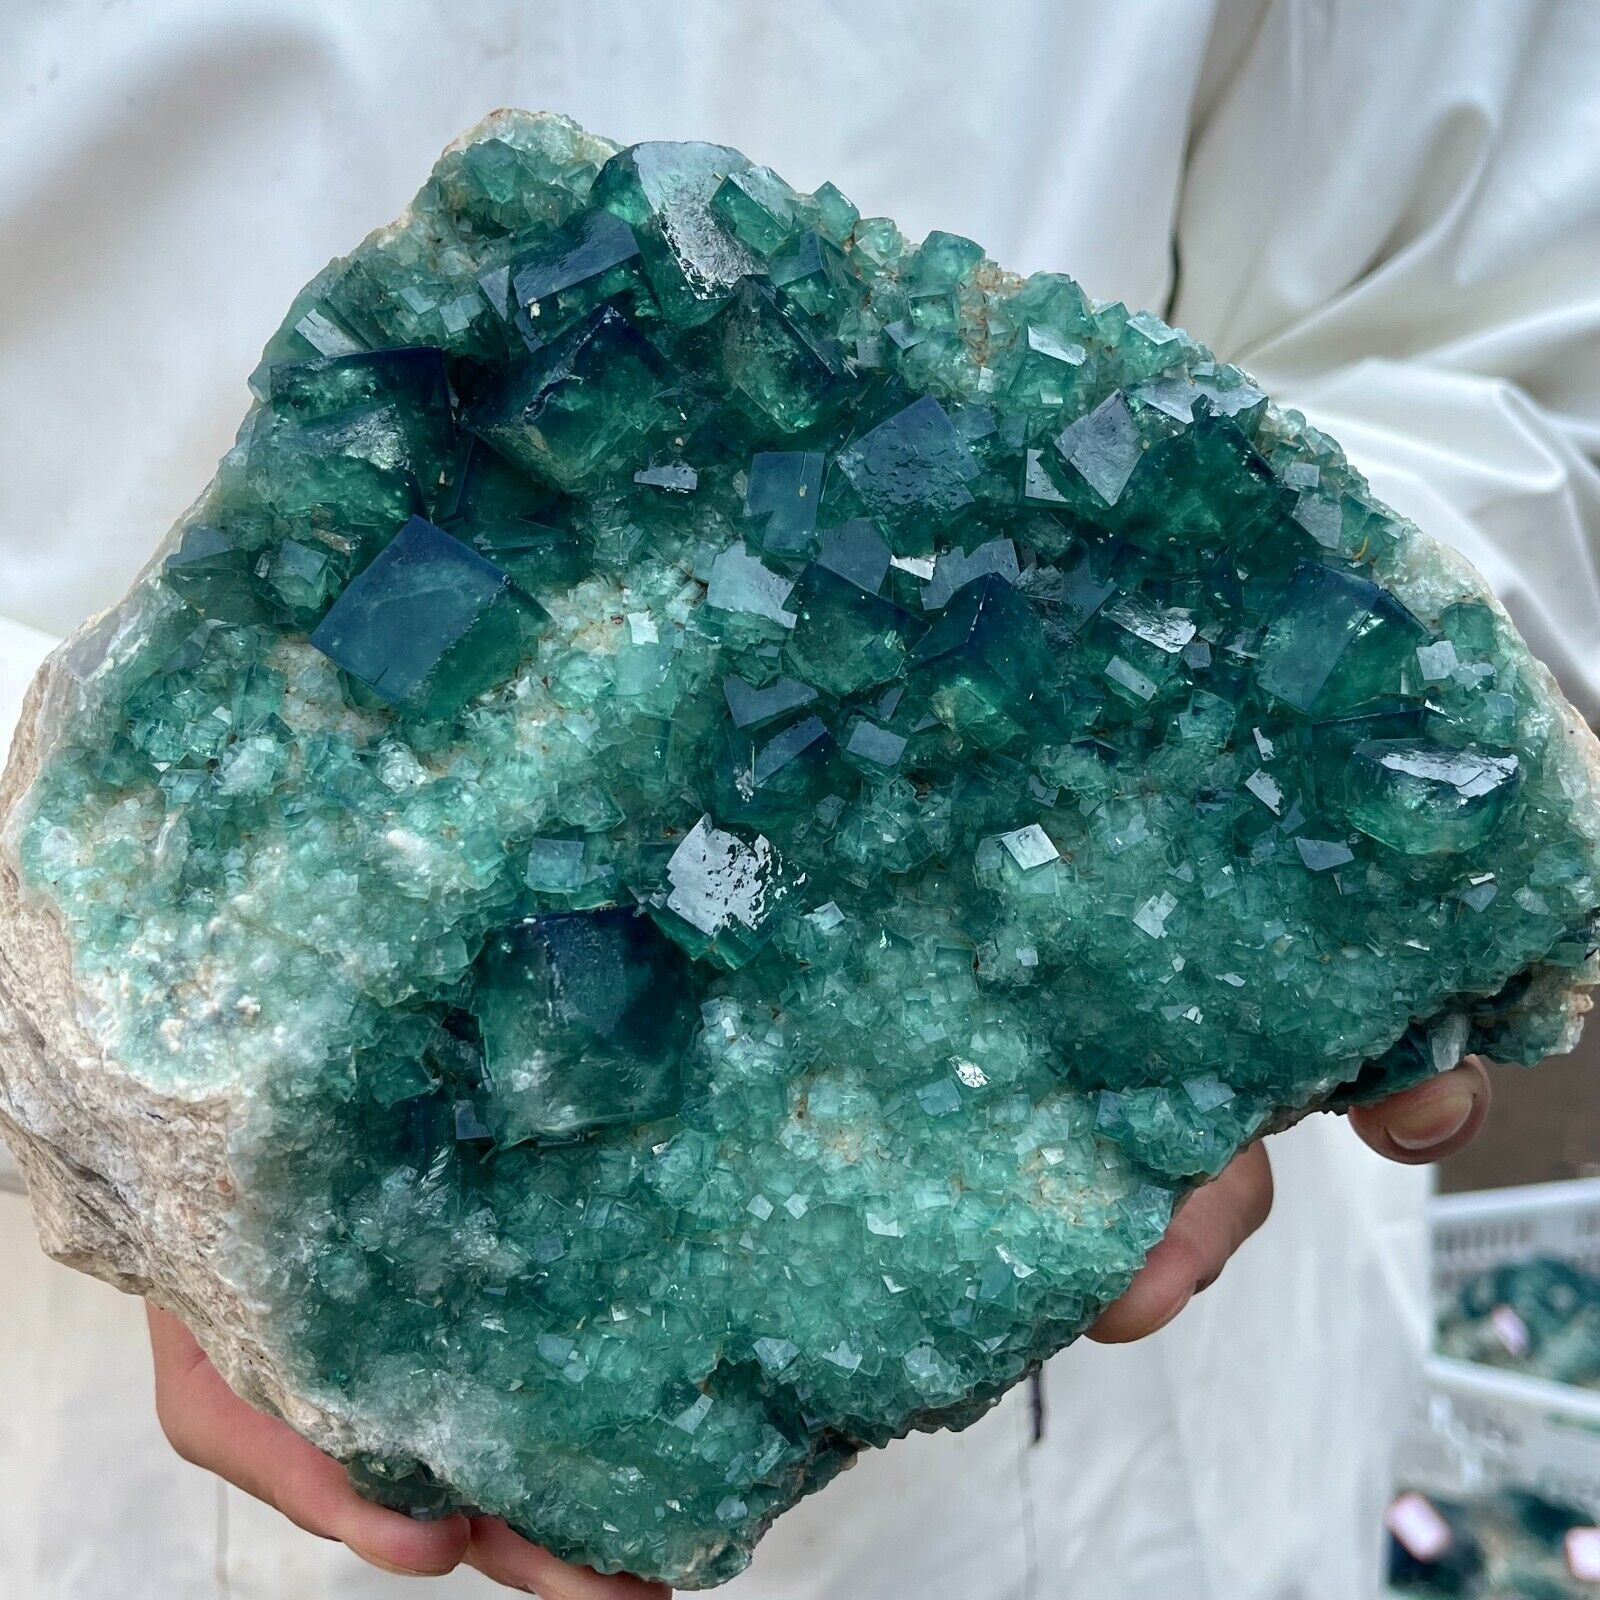 4.3lb Large NATURAL Green Cube FLUORITE Quartz Crystal Cluster Mineral Specimen